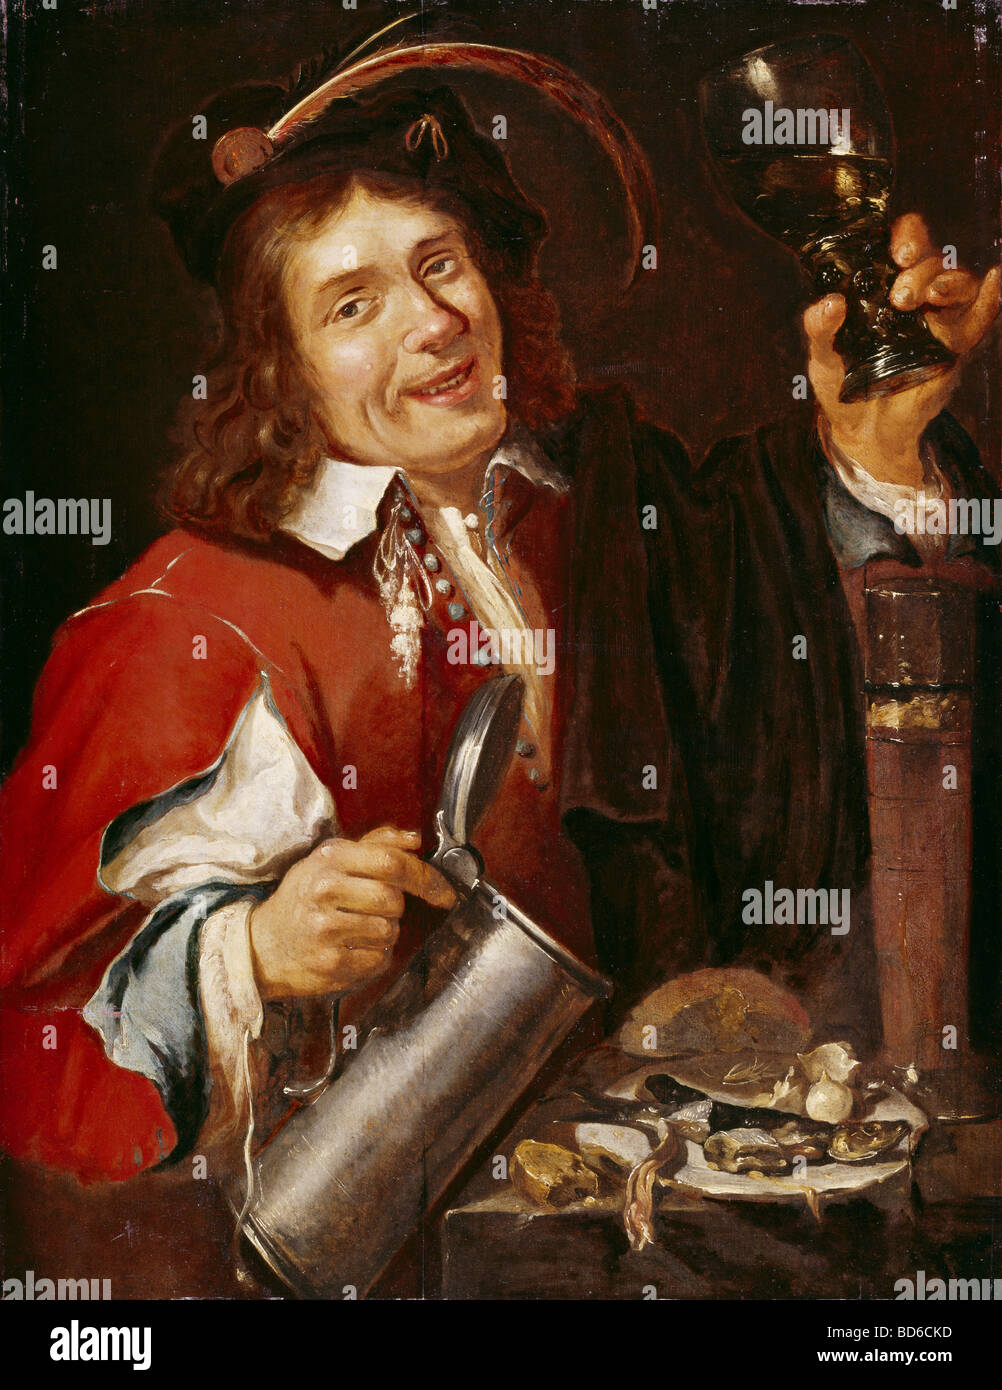 bildenden Künste Noort, Pieter van (1529 - um 1650), Malerei, "Der Geschmack", Reihe "Die fünf Sinne", Westfaelisches Landesmus Stockfoto